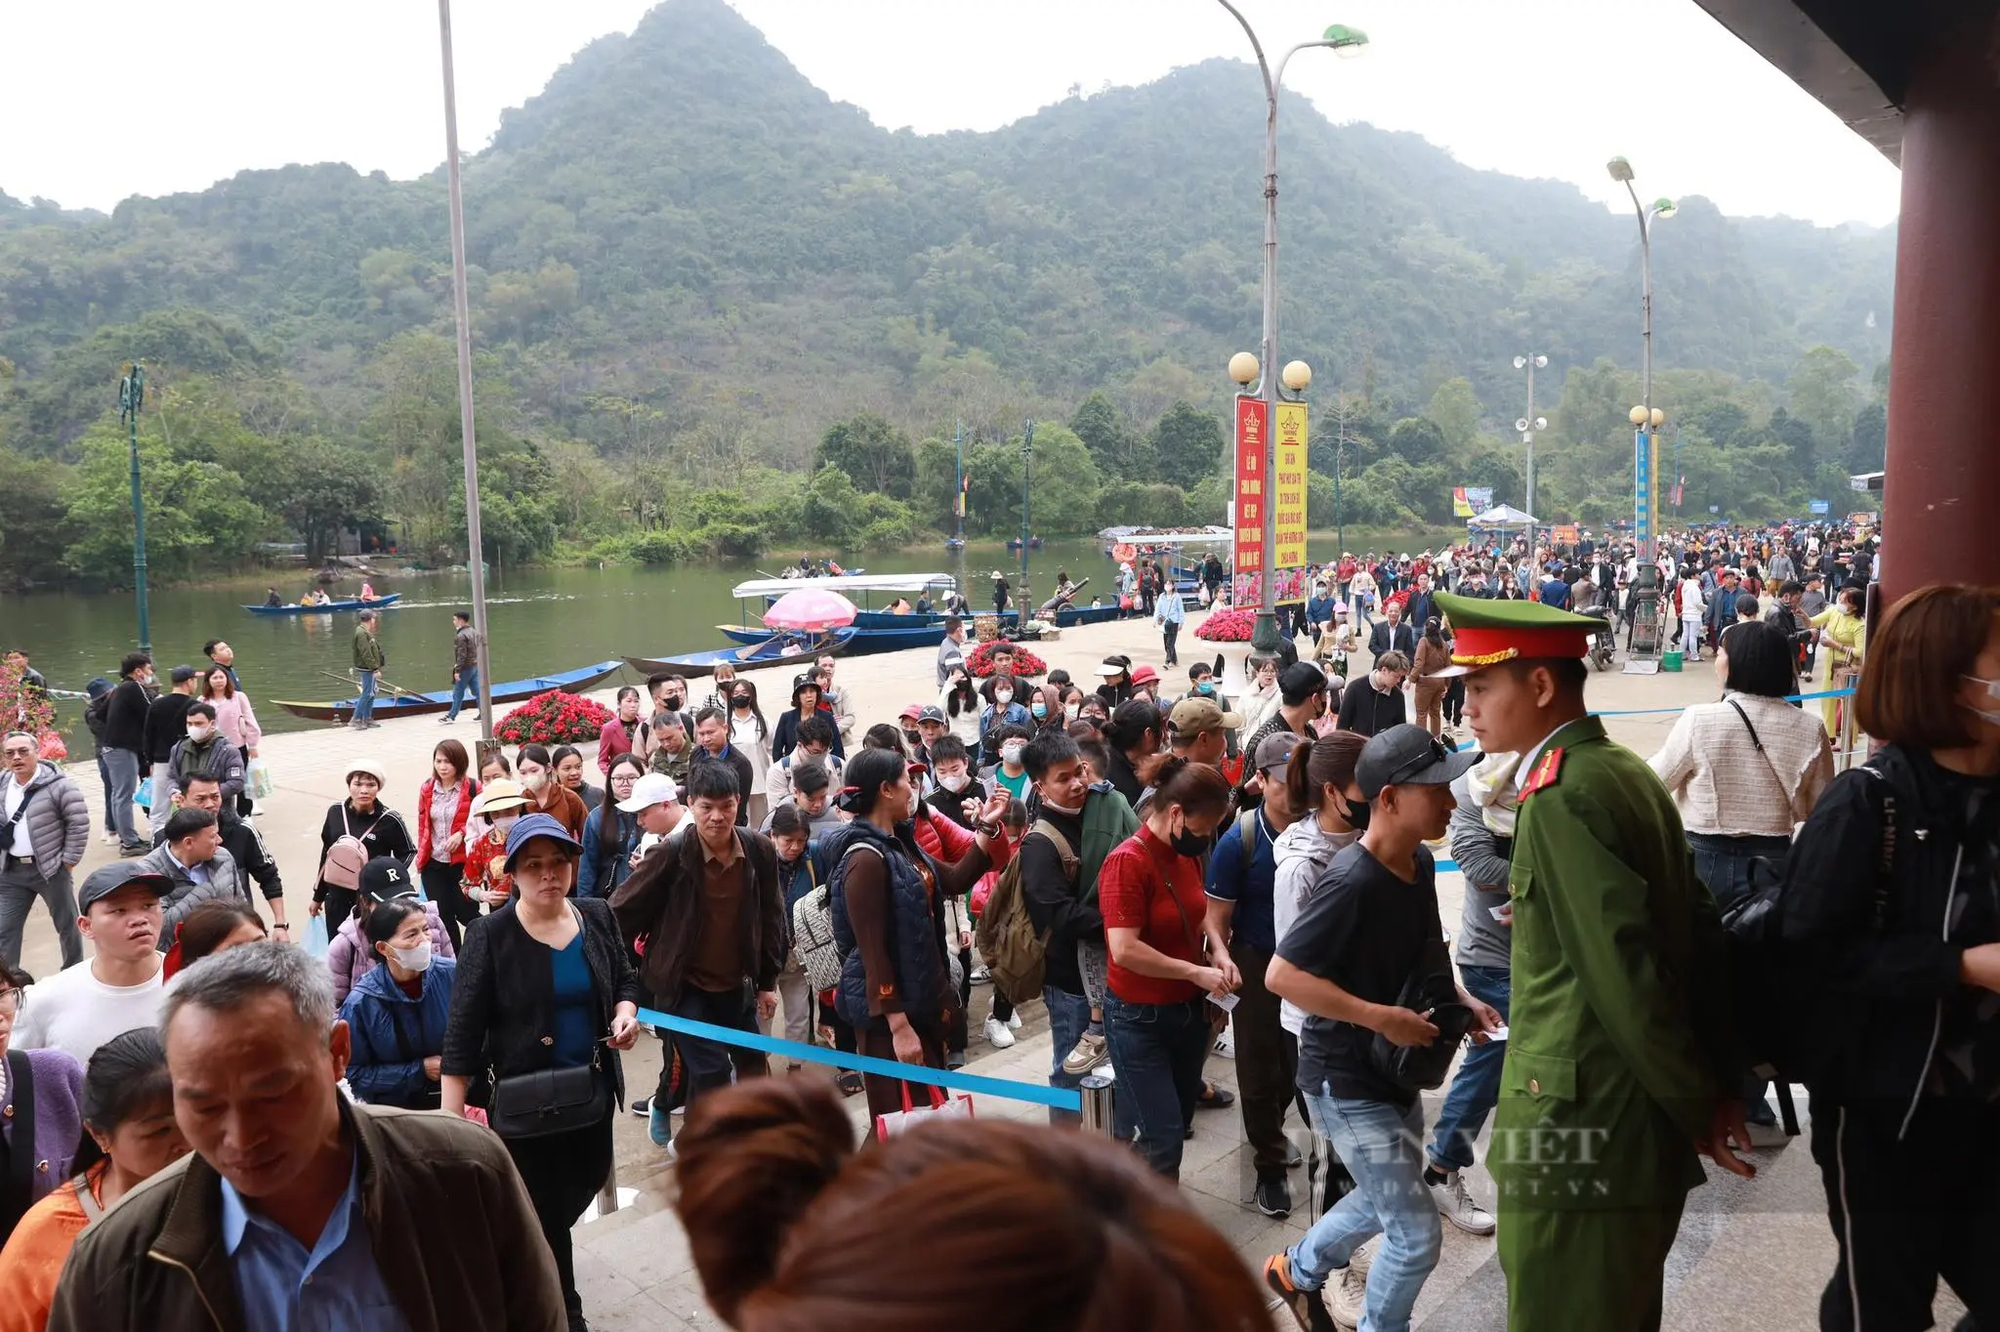 Chùa Hương đón hơn 140.000 lượt khách trước ngày khai hội- Ảnh 2.